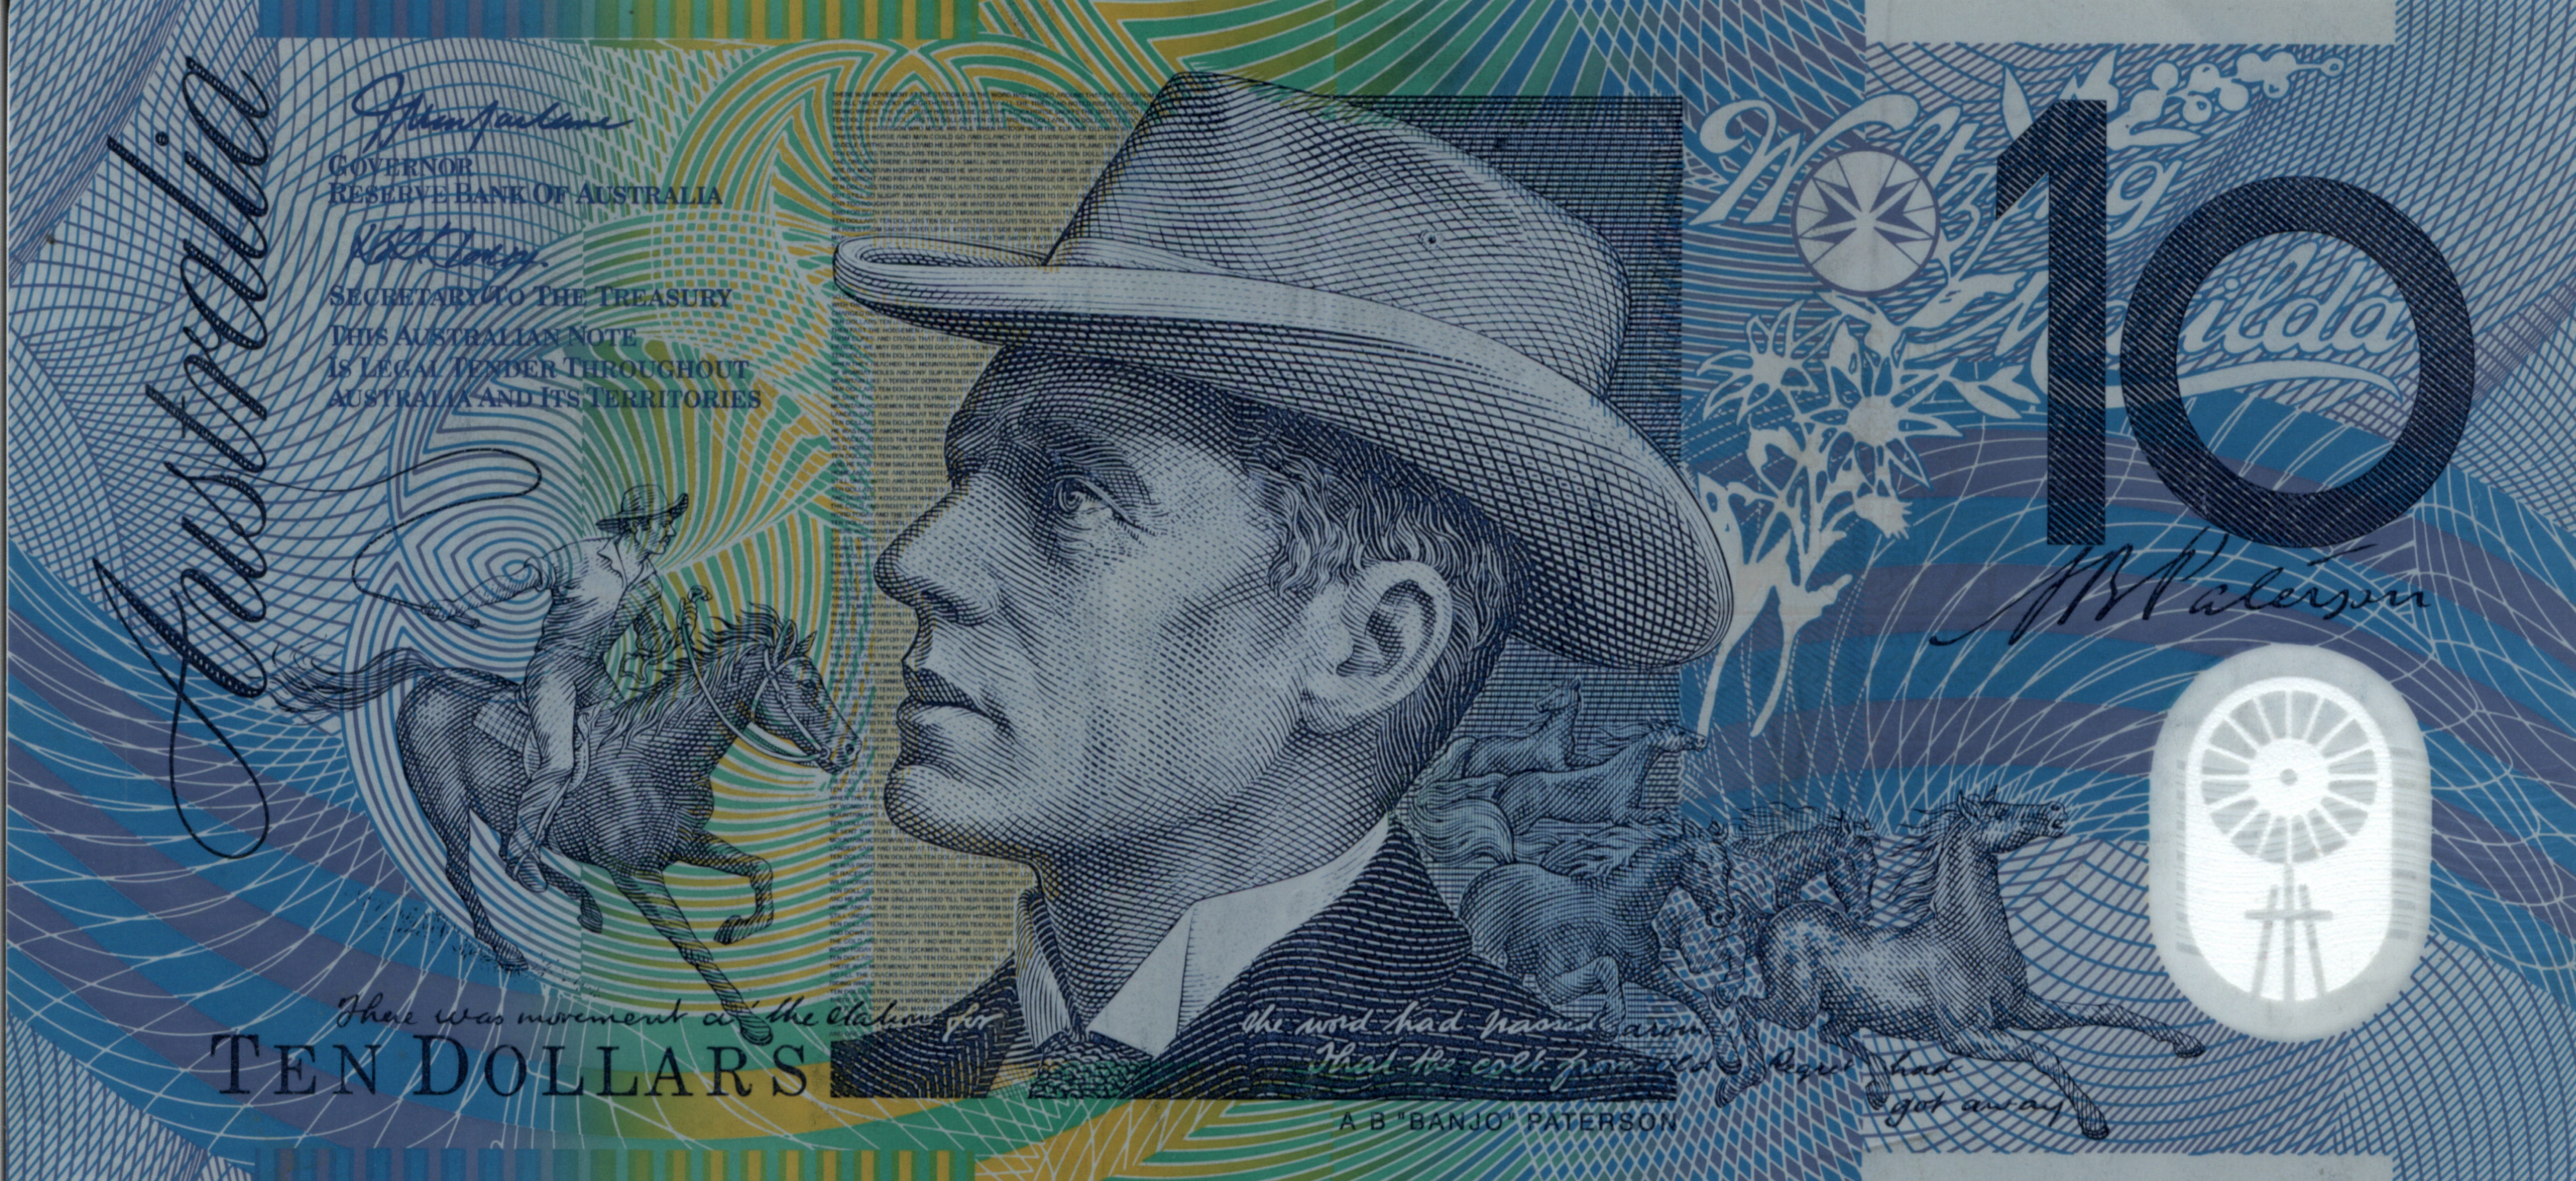 Скачать обои Австралийский Доллар на телефон бесплатно